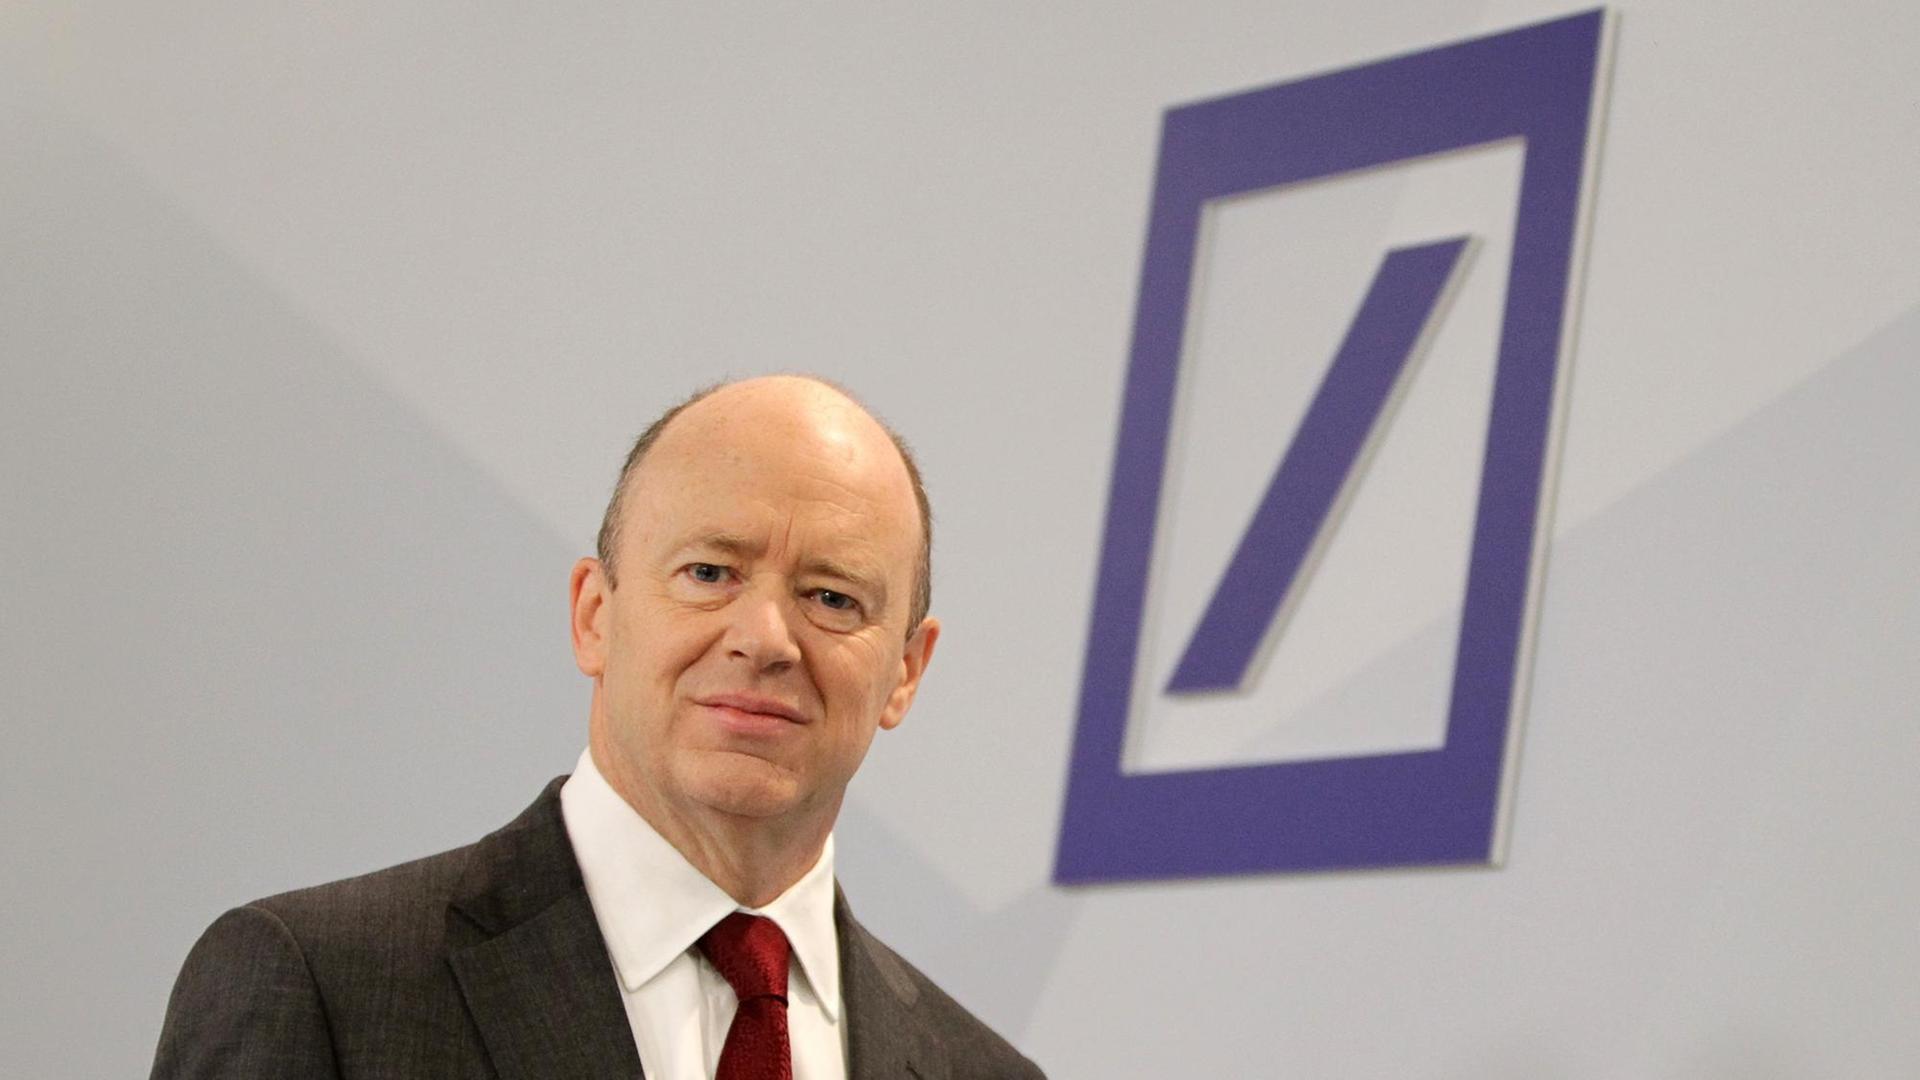 Der künftige Chef der Deutschen Bank, John Cryan, während einer Pressekonferenz am 29.10.2015 in Frankfurt am Main